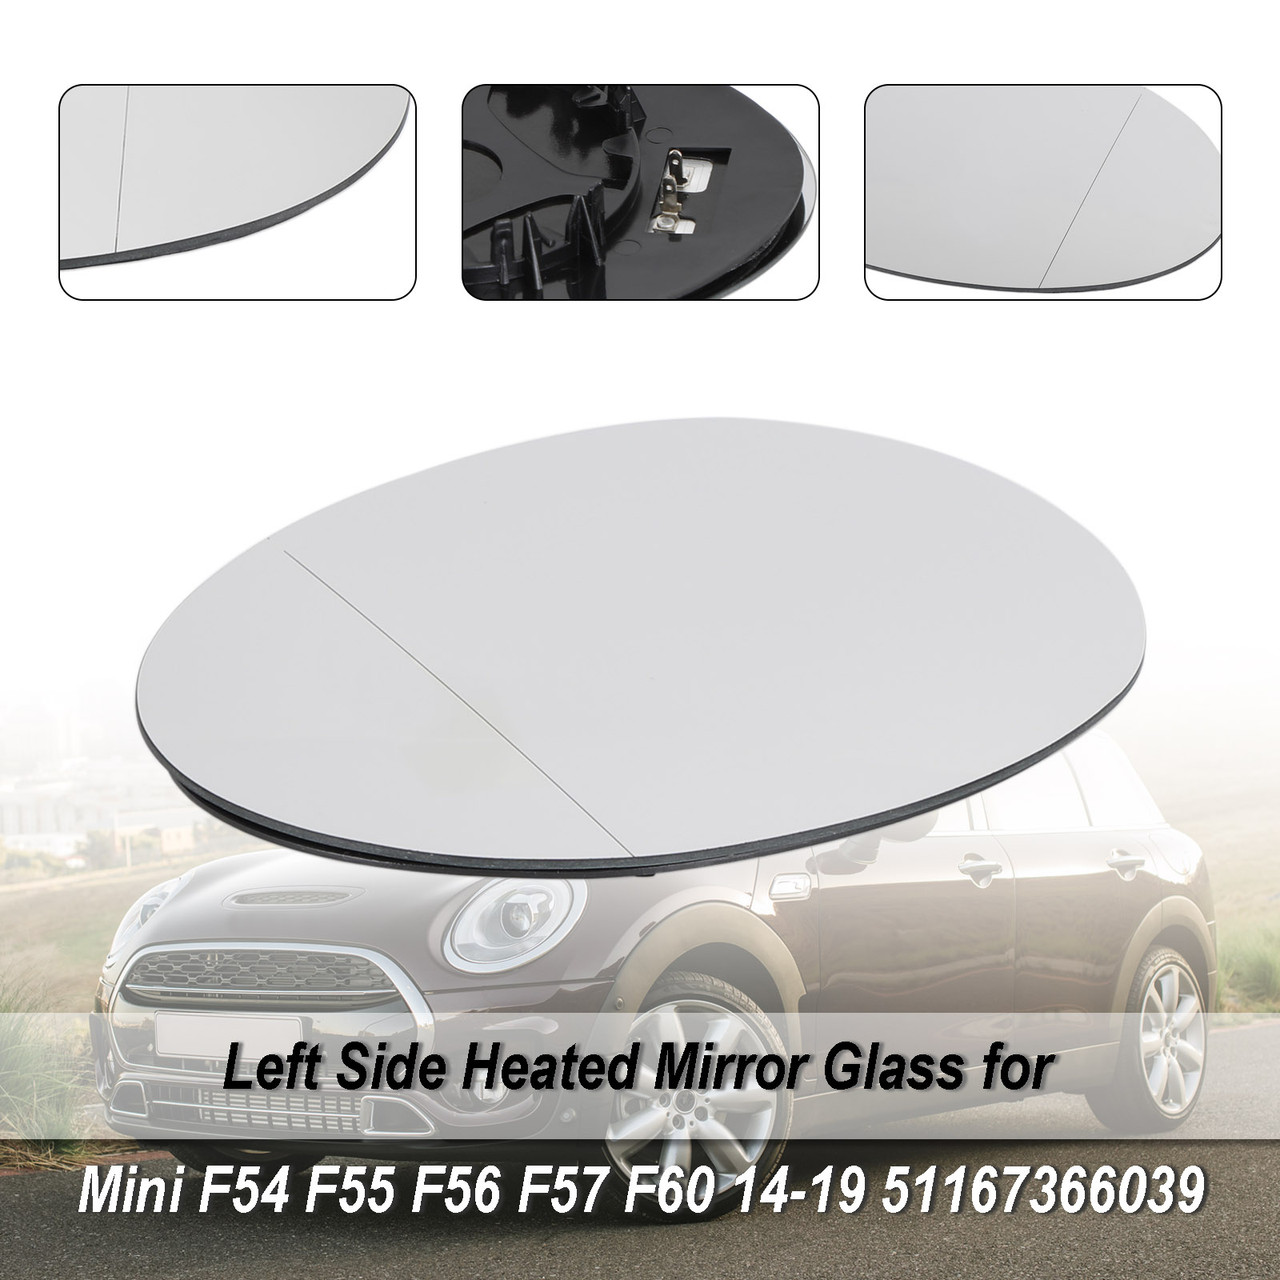 left Side Heated Mirror Glass for Mini F54 F55 F56 F57 F60 14-19 51167366039